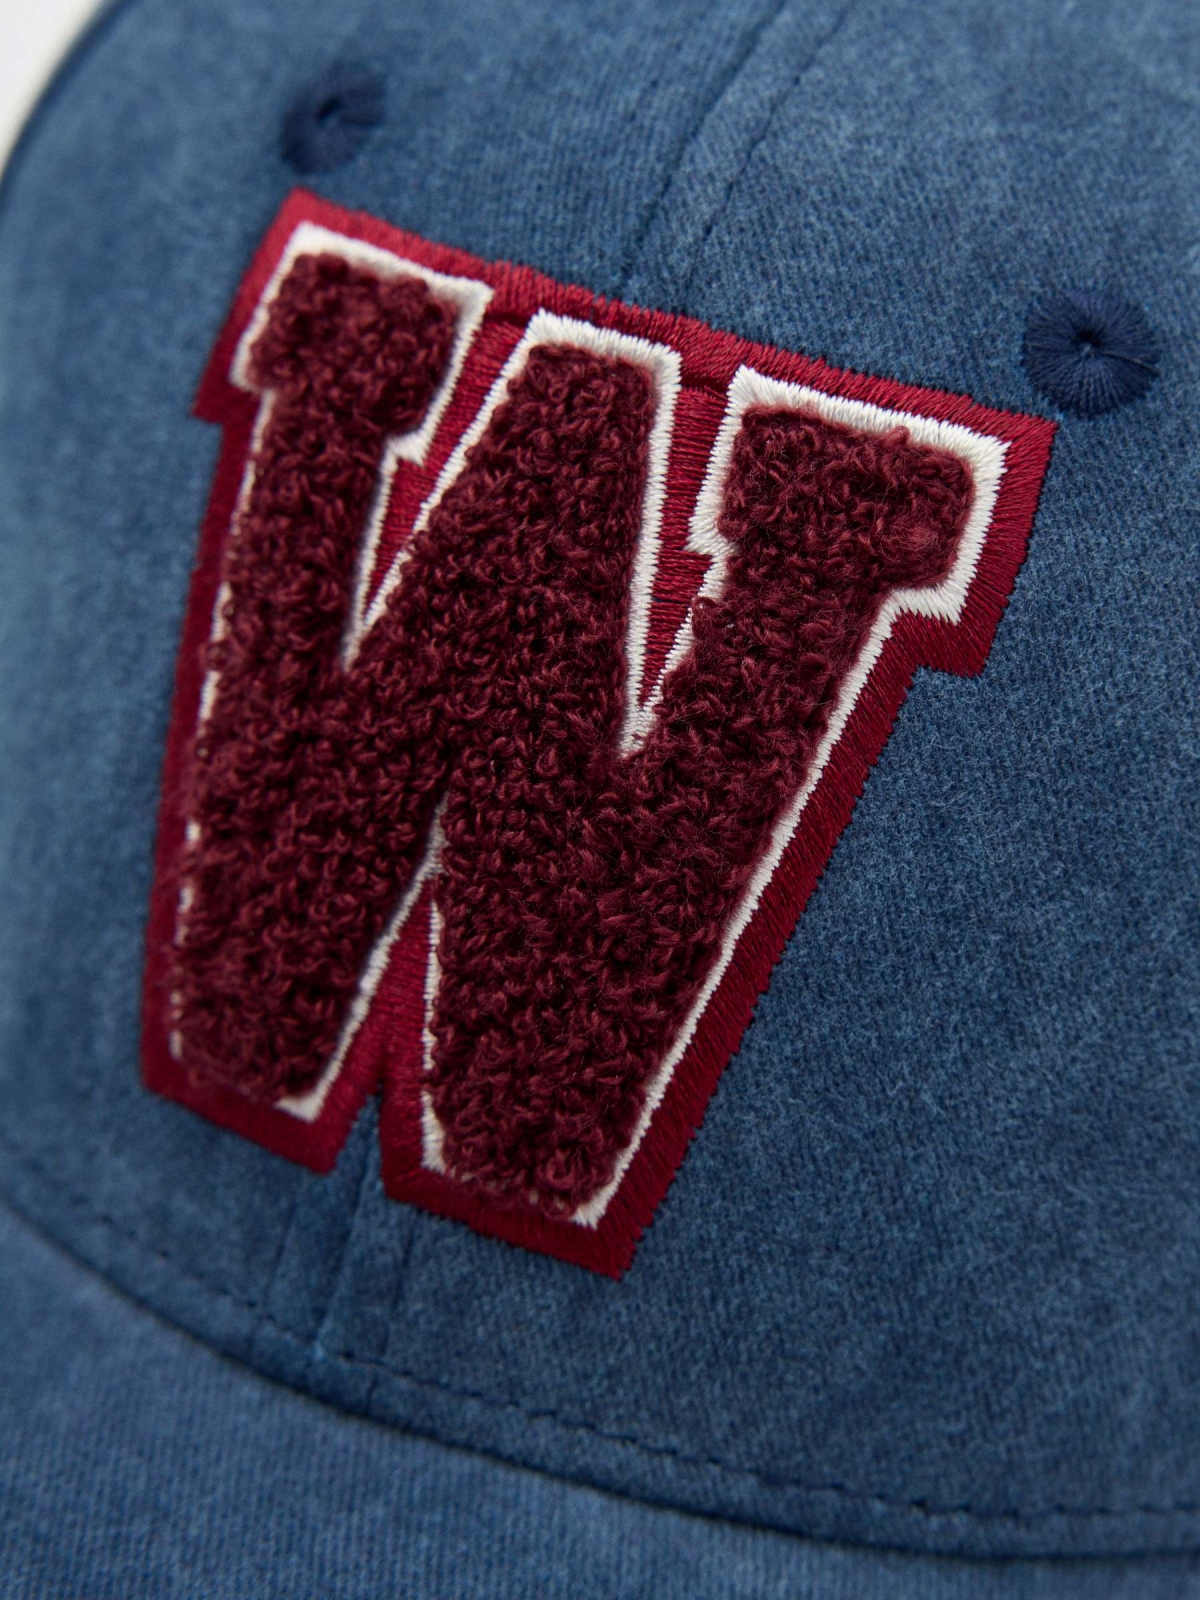 Logotipo do boné de basebol azul vista detalhe